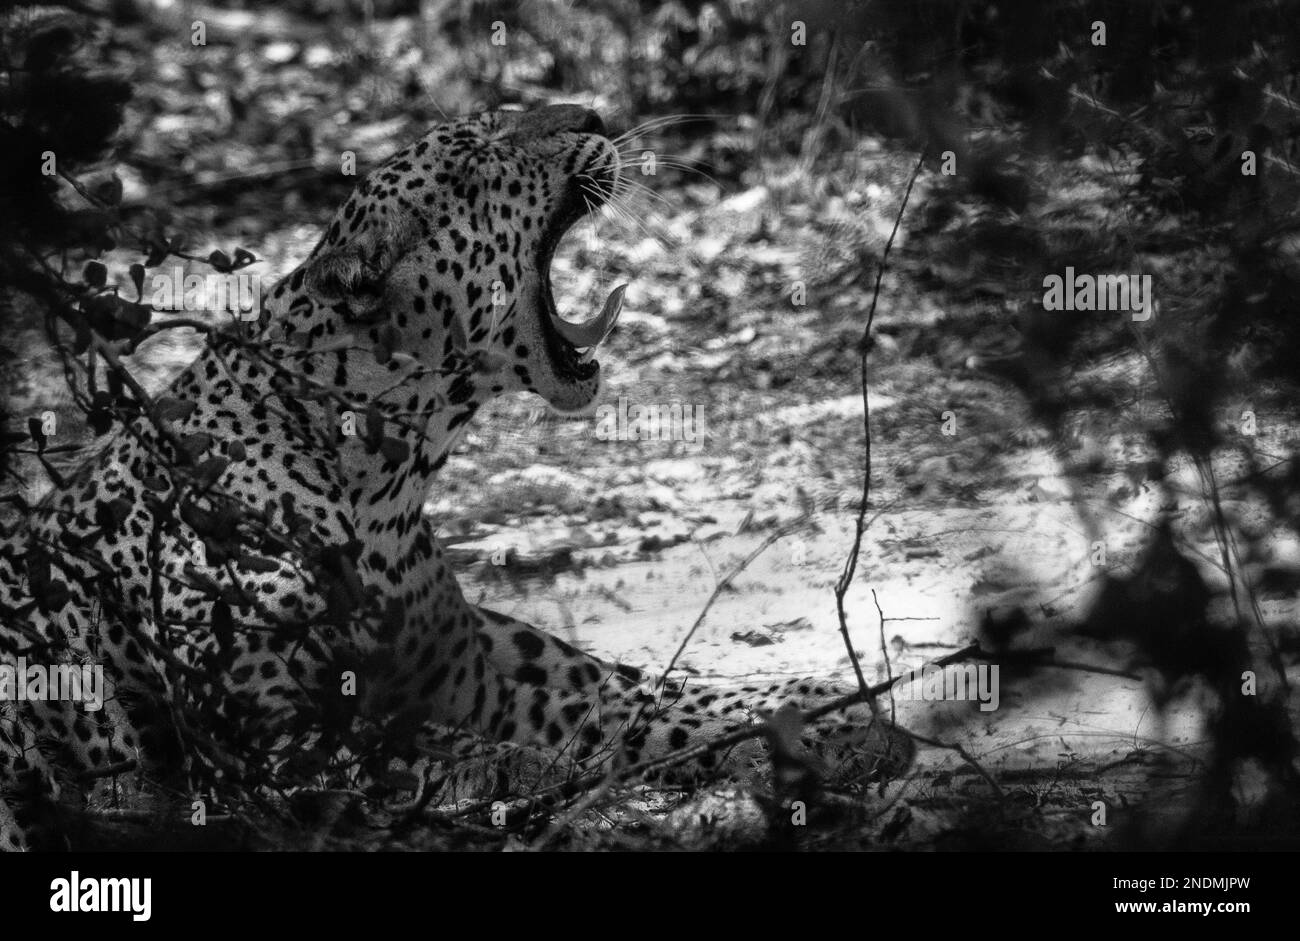 Sri Lankan leopards in the Wild. Stock Photo